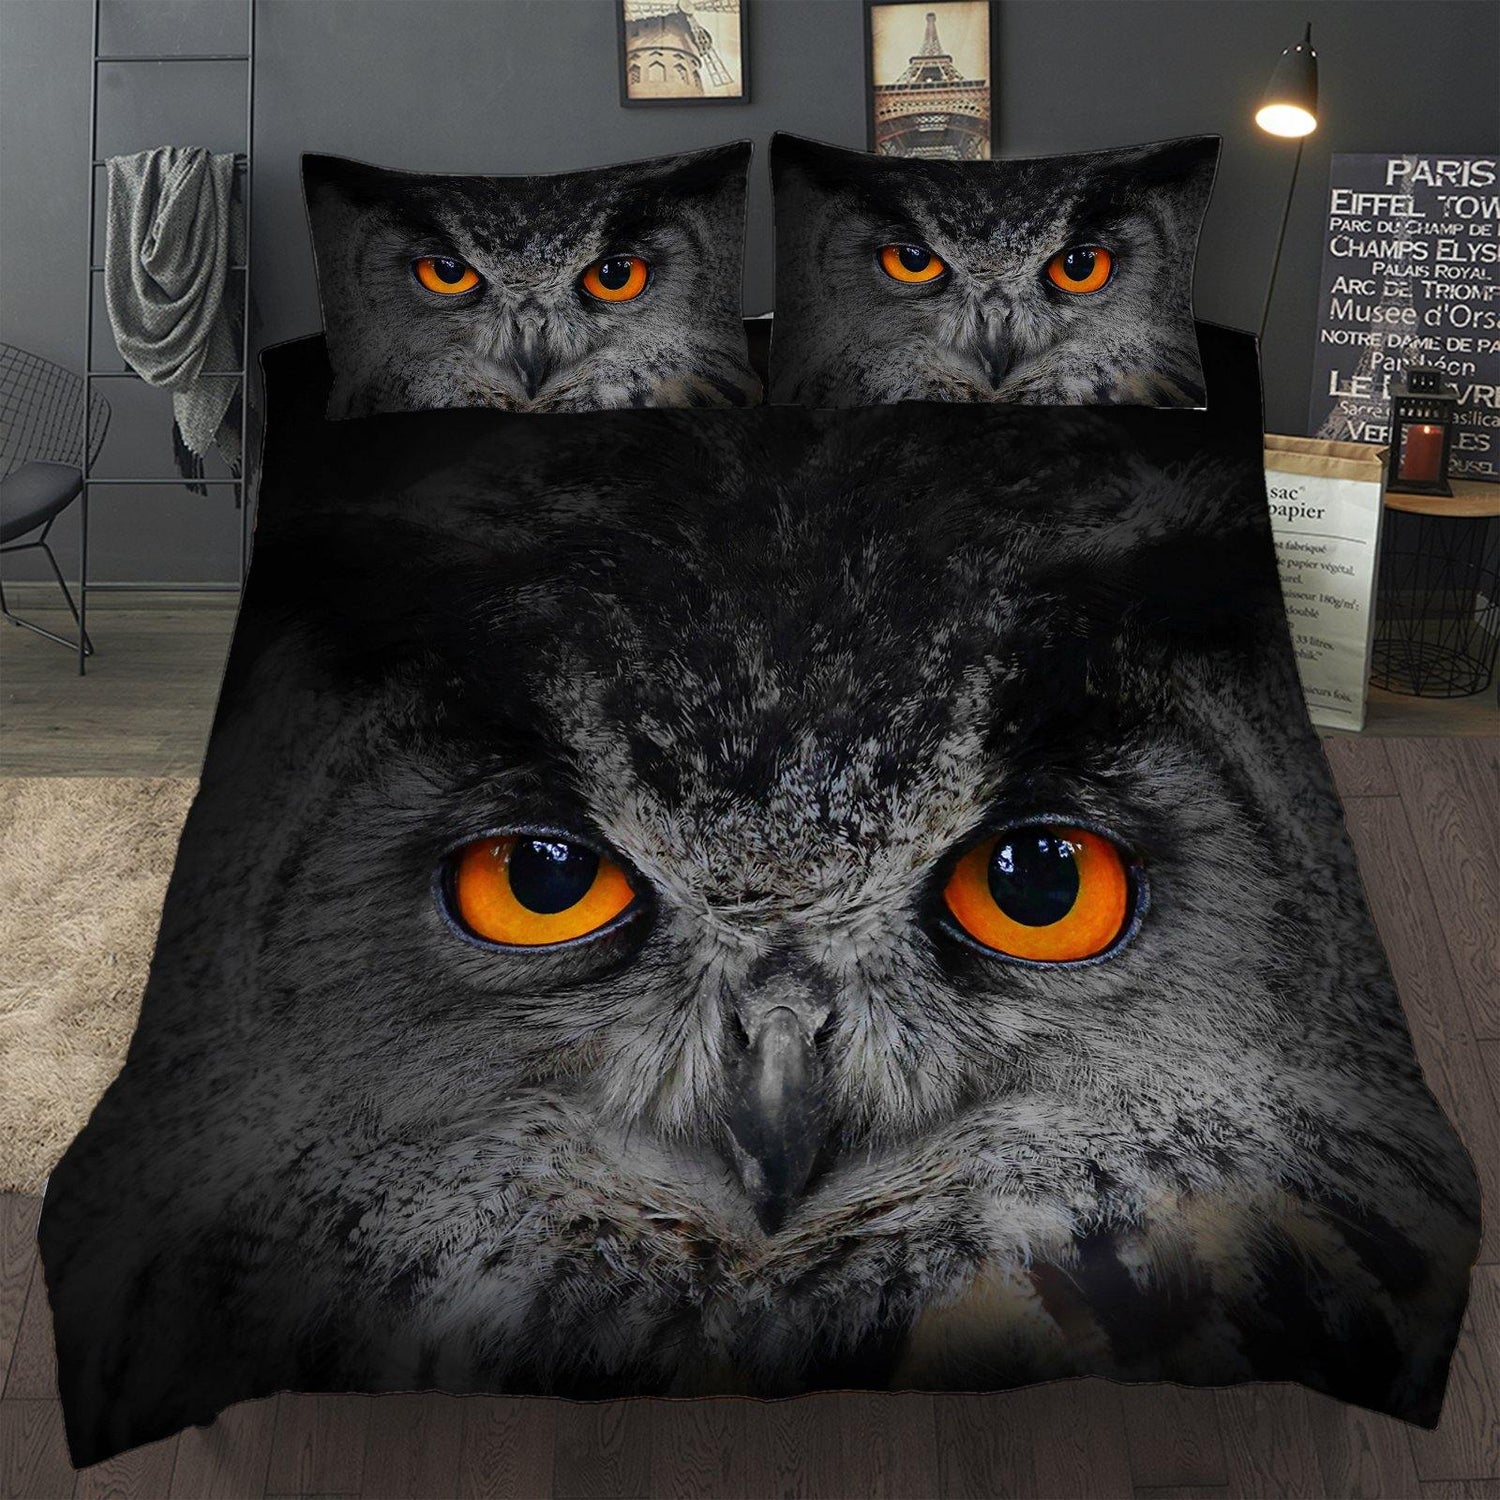 WONGS BEDDING Black owl print duvet cover set bedding bedroom home kit - Wongs bedding